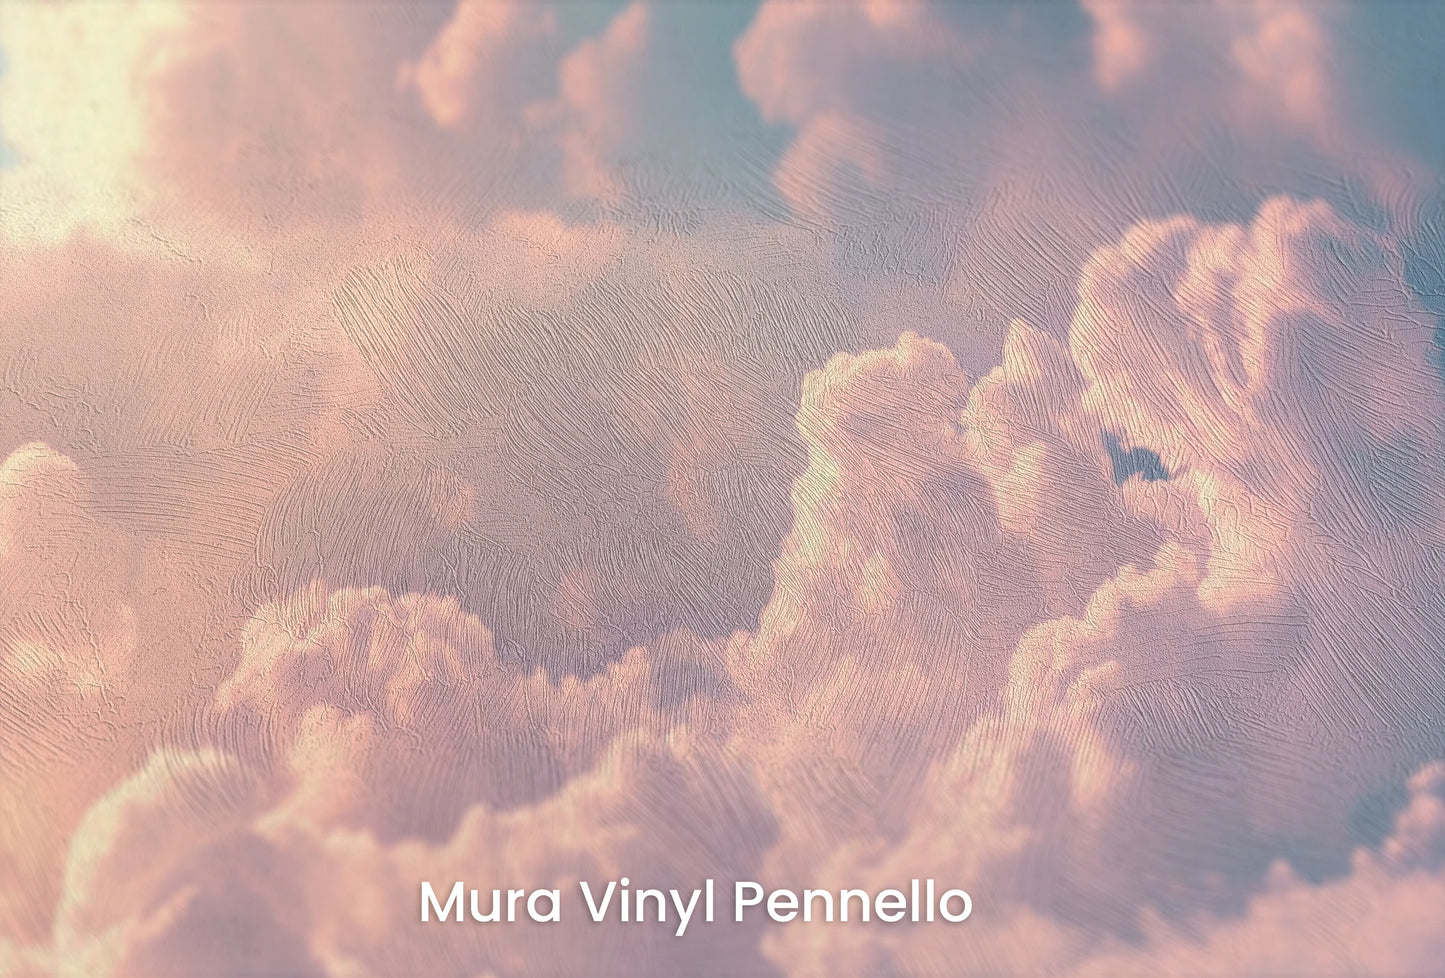 Zbliżenie na artystyczną fototapetę o nazwie Azure Canvas na podłożu Mura Vinyl Pennello - faktura pociągnięć pędzla malarskiego.